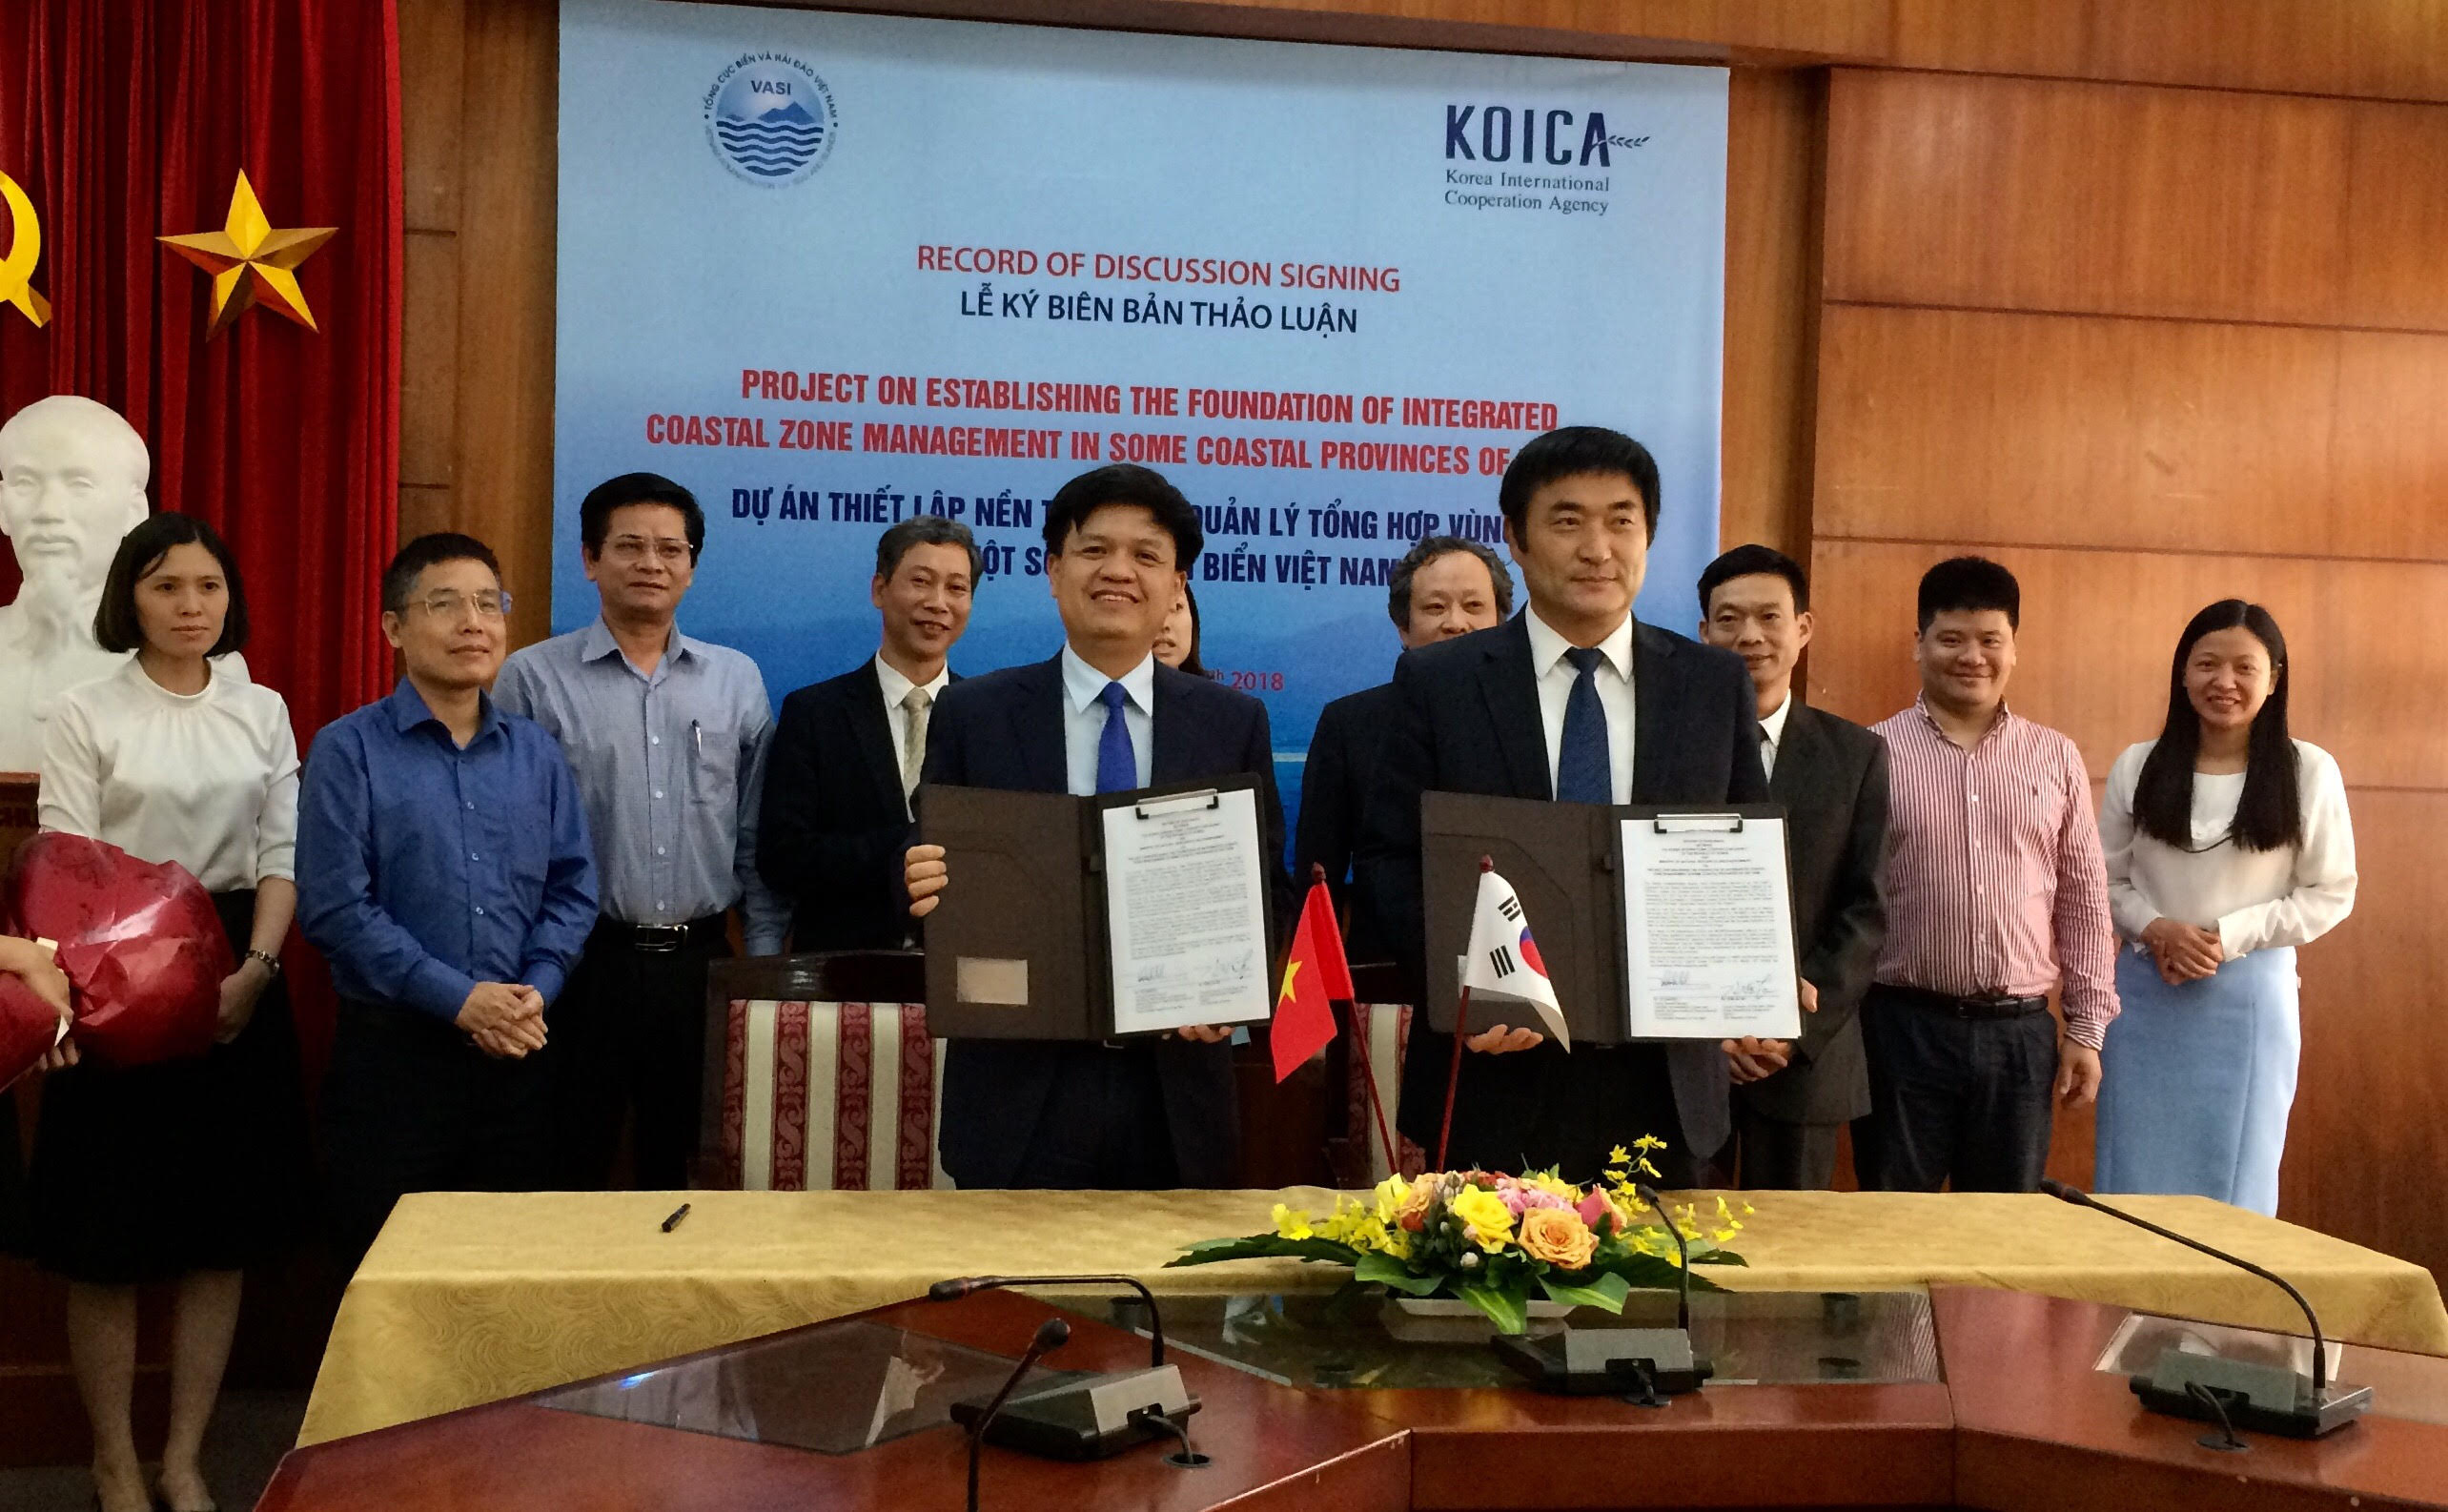 Việt Nam - Hàn Quốc ký kết biên bản thảo luận (RoD) trong khuôn khổ Dự án “Thiết lập nền tảng cho quản lý tổng hợp vùng bờ tại một số tỉnh ven biển Việt Nam”